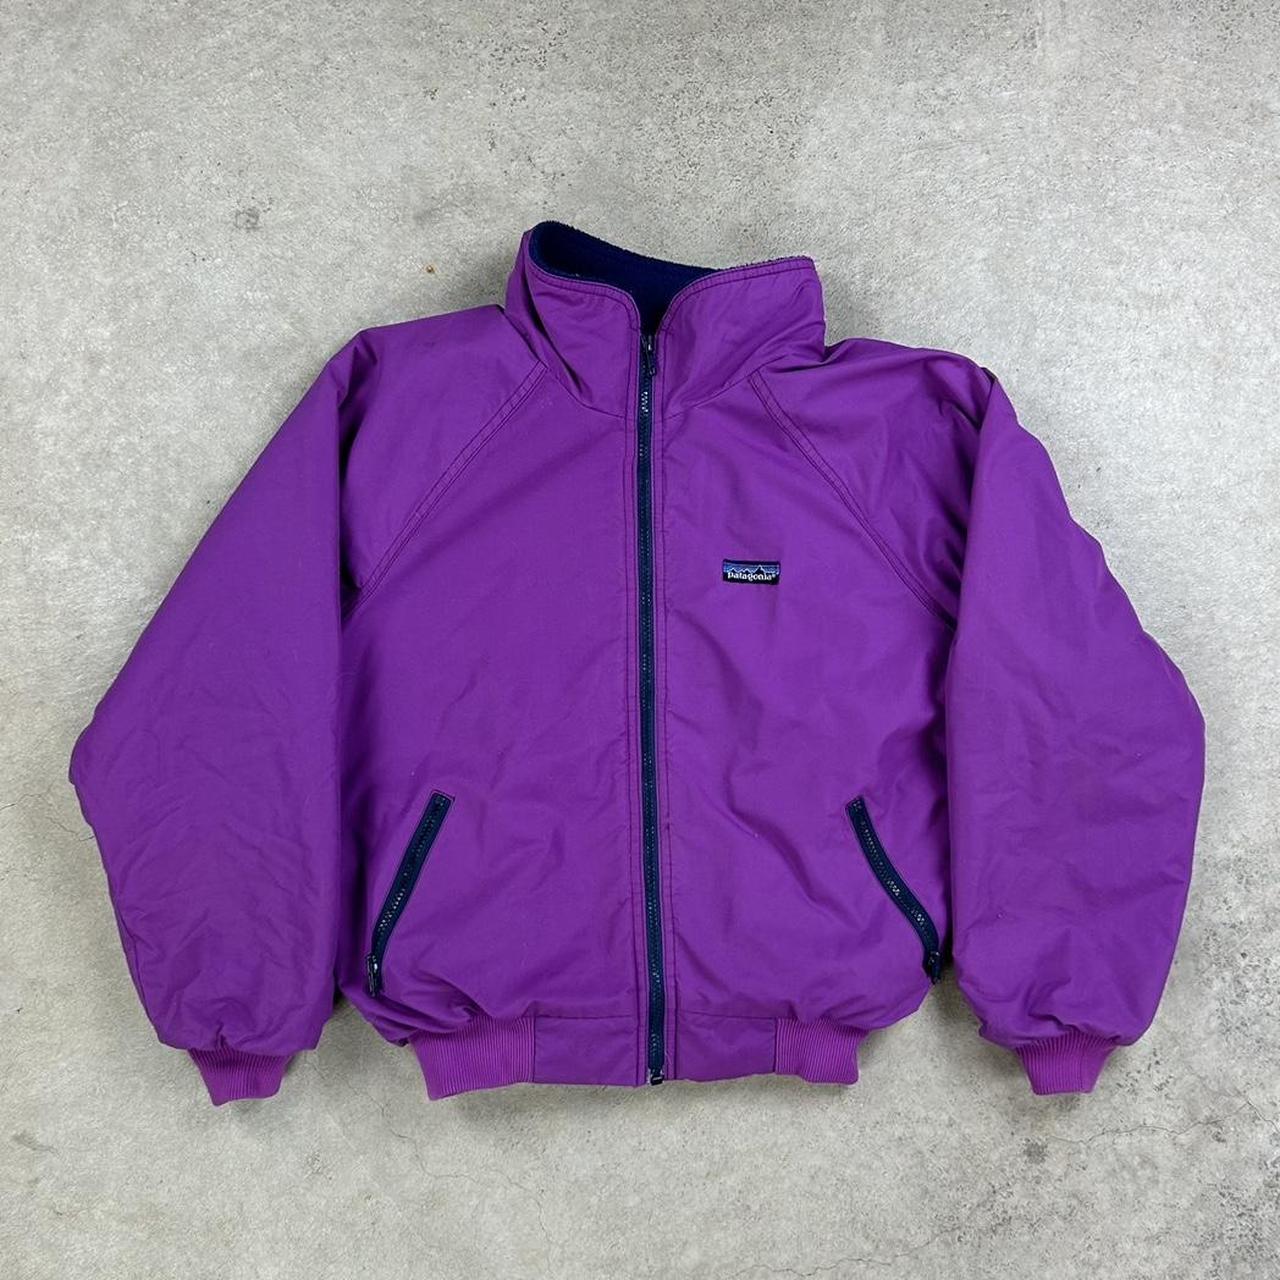 Vintage 90s Purple Patagonia Fleeced Lined Full Zip... - Depop